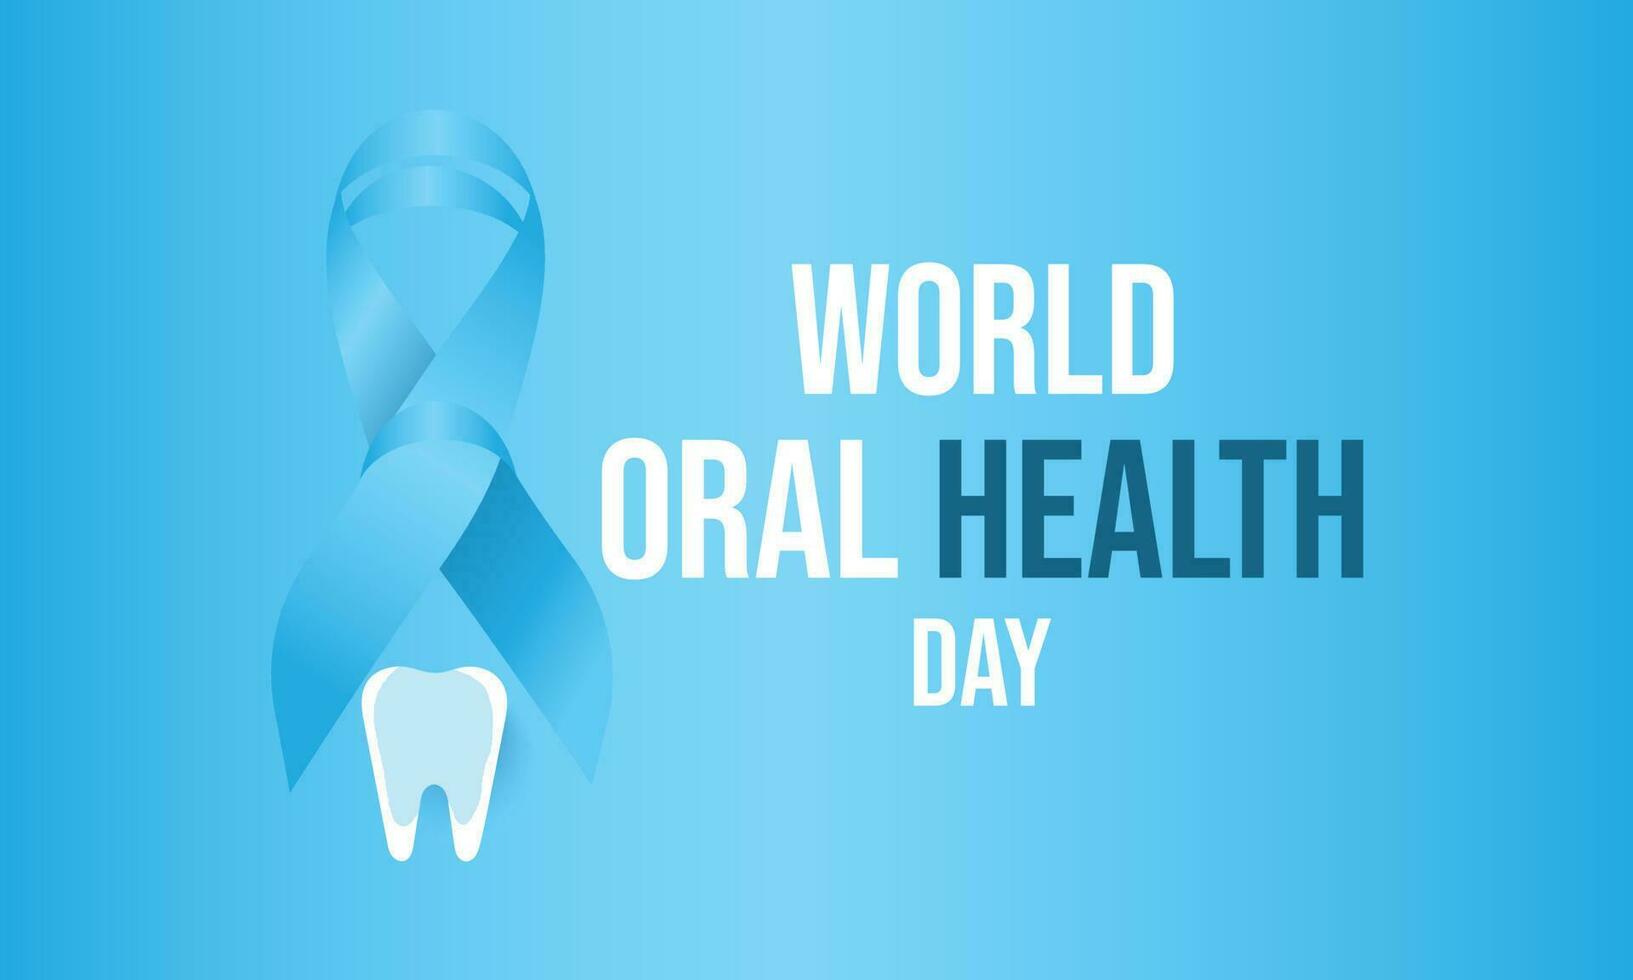 värld oral hälsa dag. mall för bakgrund, baner, kort, affisch vektor